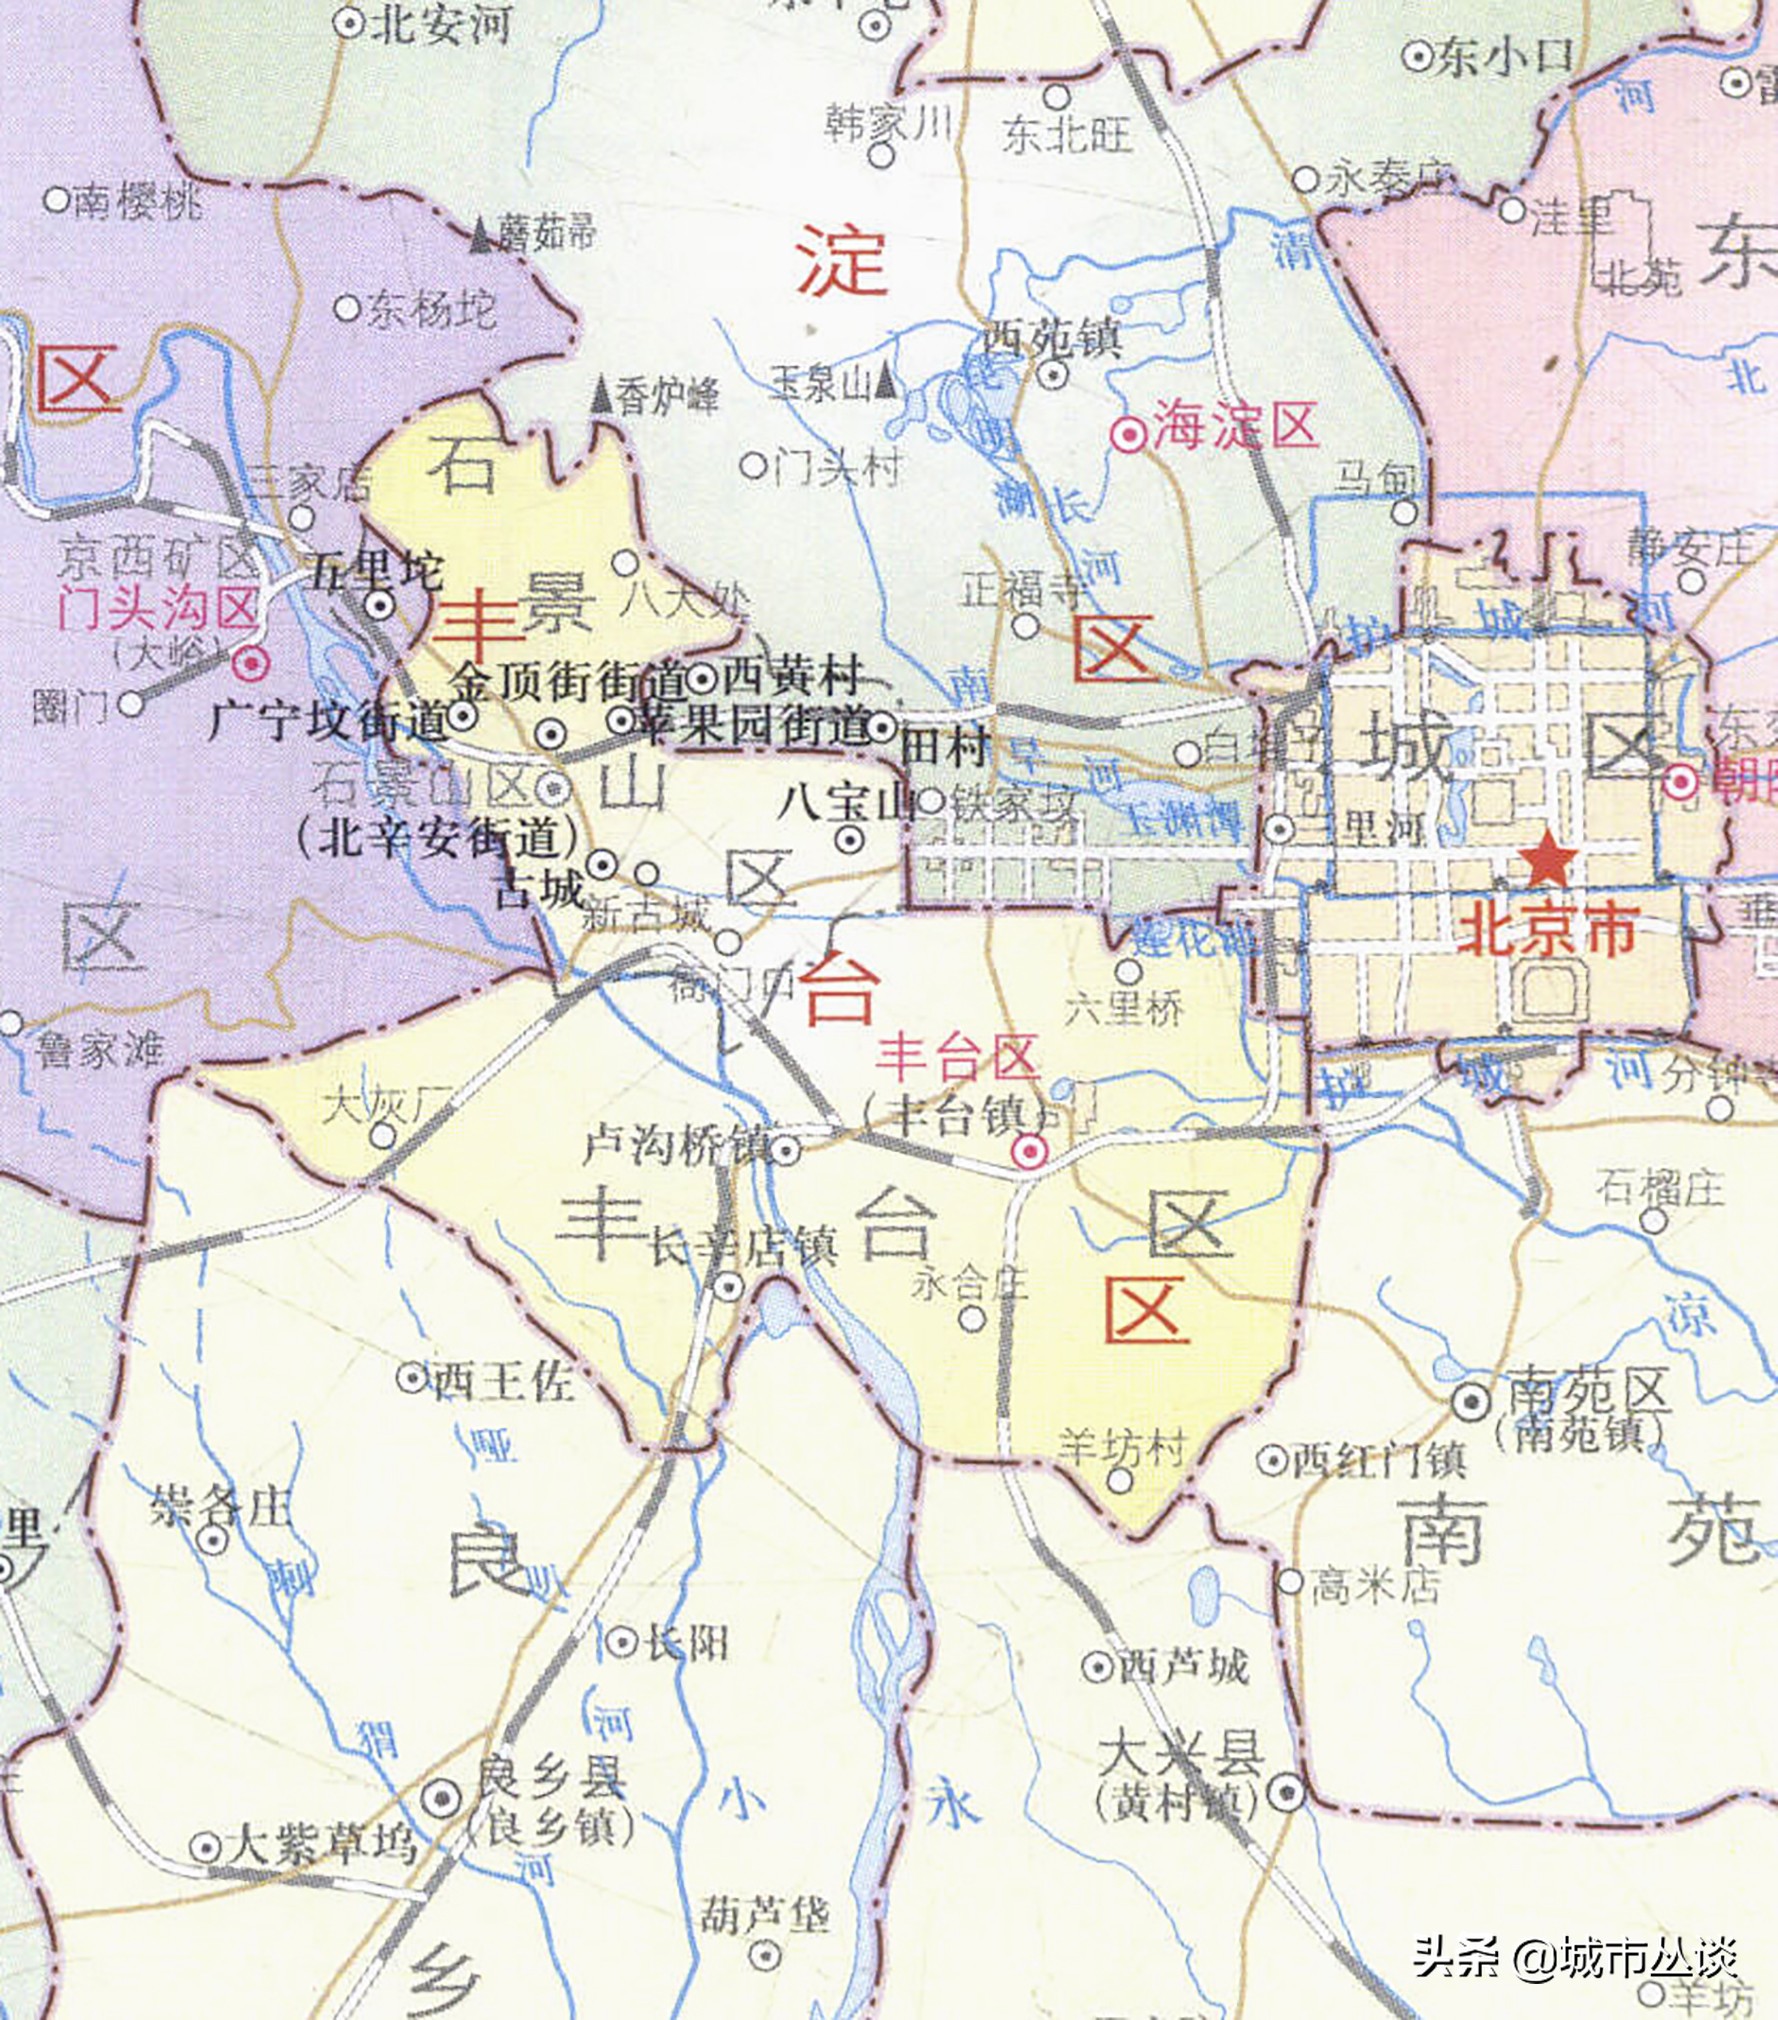 北京市丰台区行政区划变化过程研究